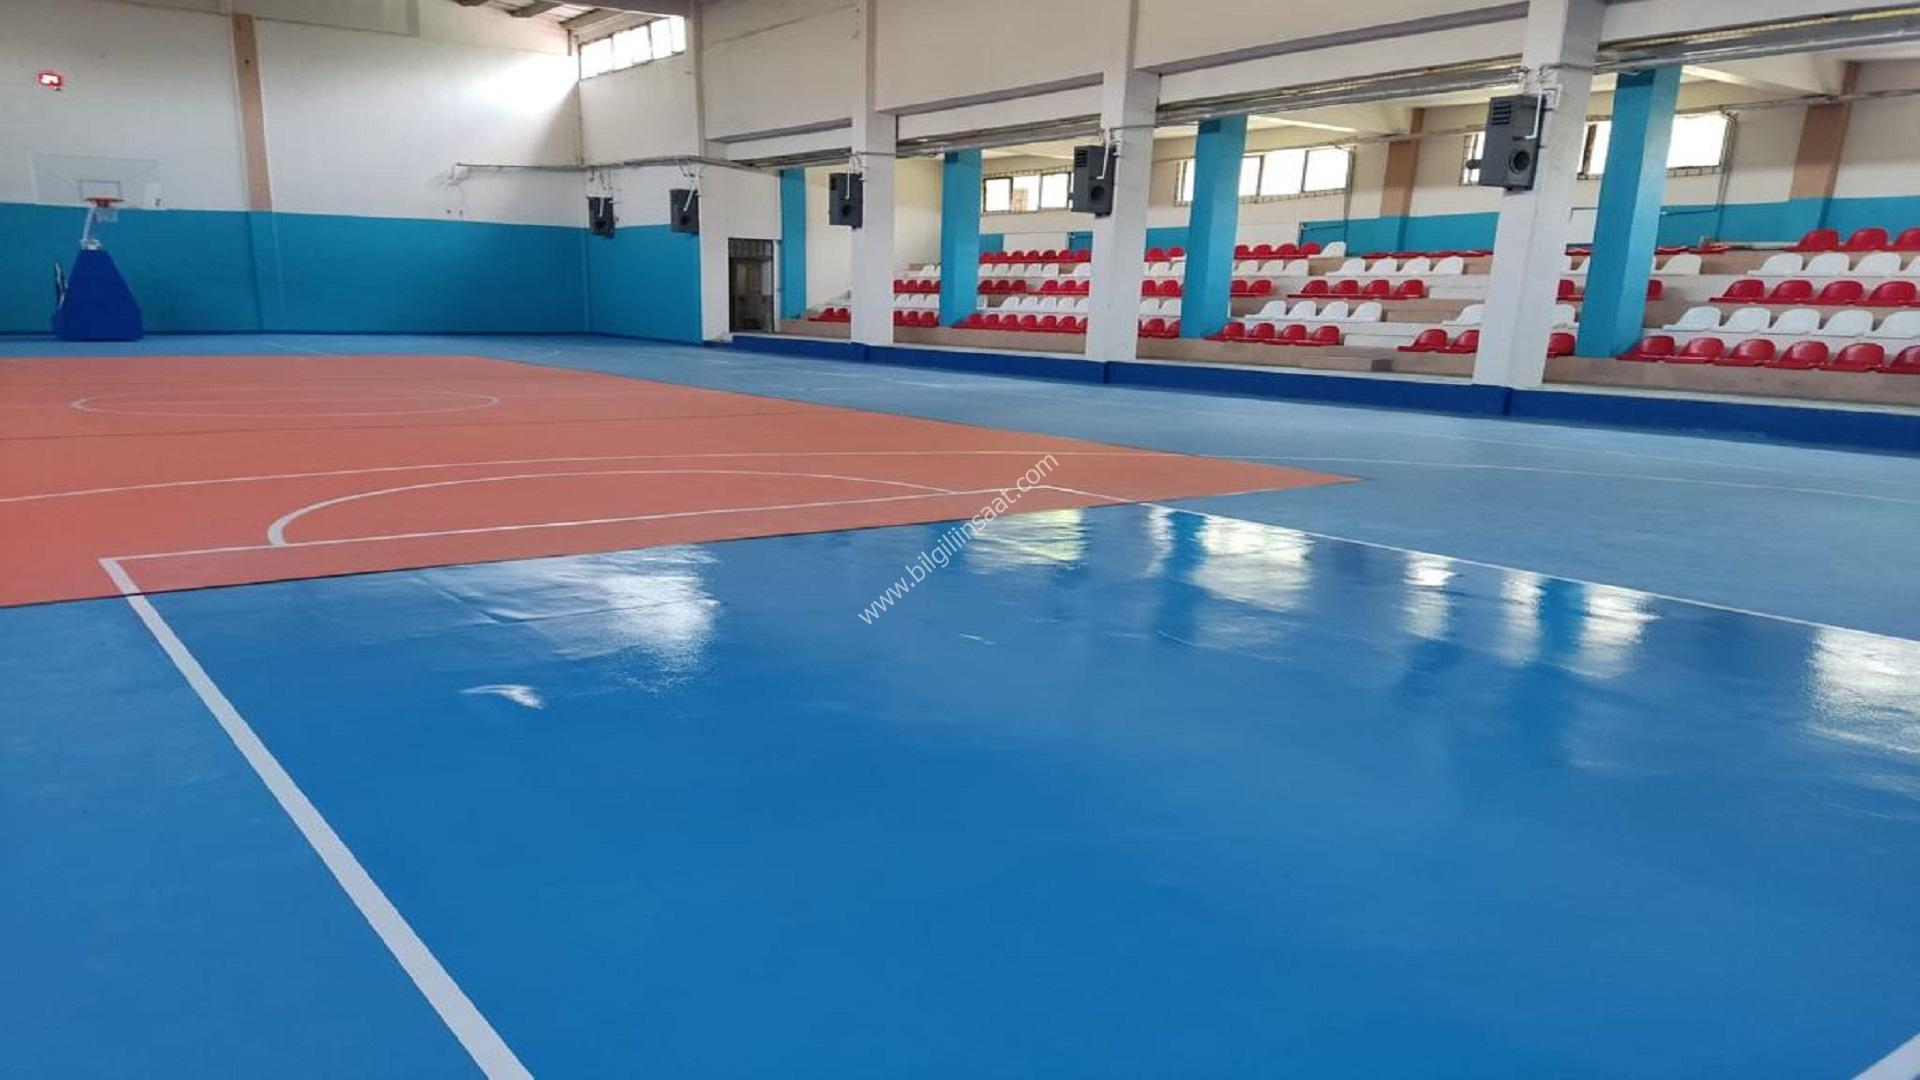 Sakarya – Kapalı Spor Salonu Zemin Boyama Projesi